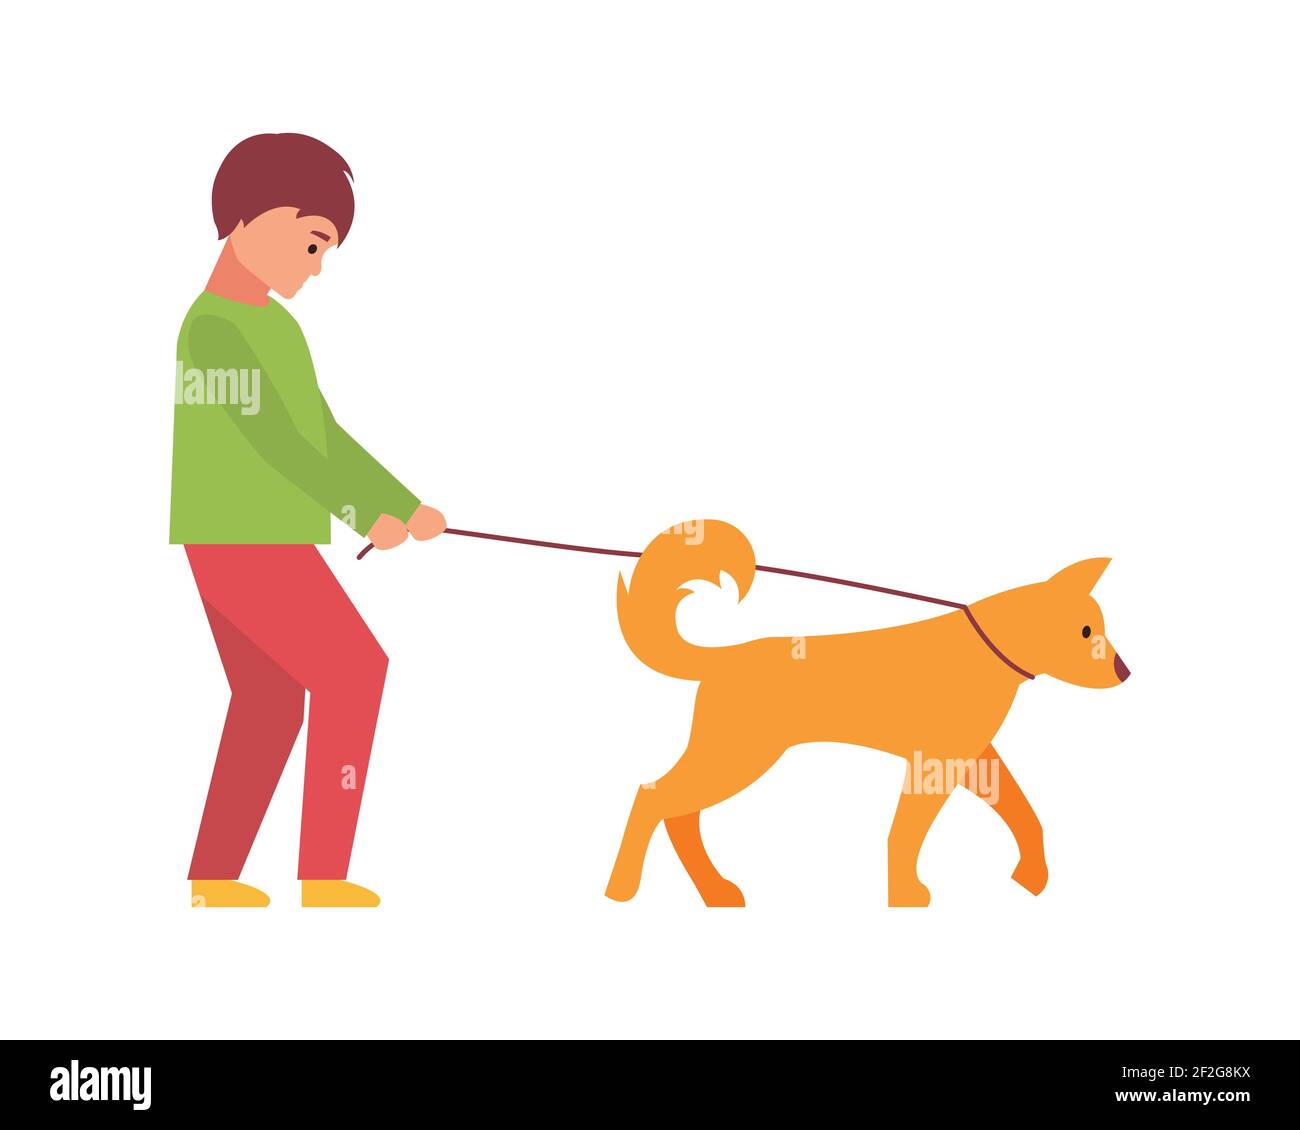 Chien professionnel marchant. Un homme marche avec un animal de compagnie. Illustration vectorielle isolée sur fond blanc. Illustration de Vecteur